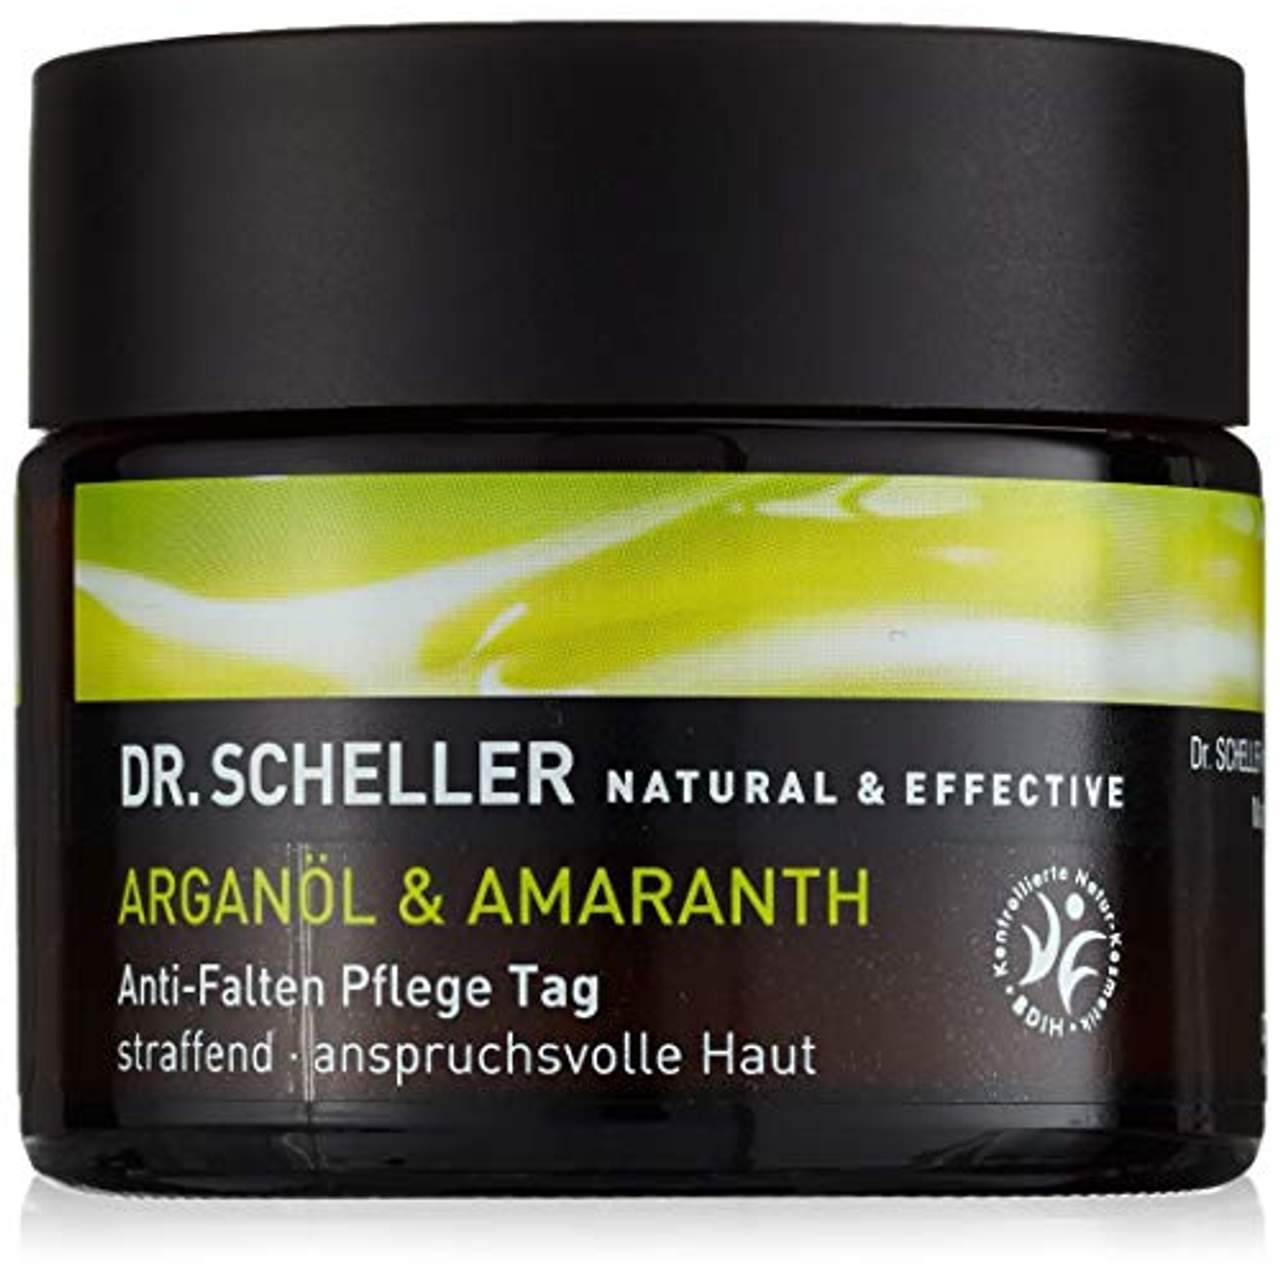 Dr Scheller Arganöl und Amaranth Anti-Falten Pflege Tag